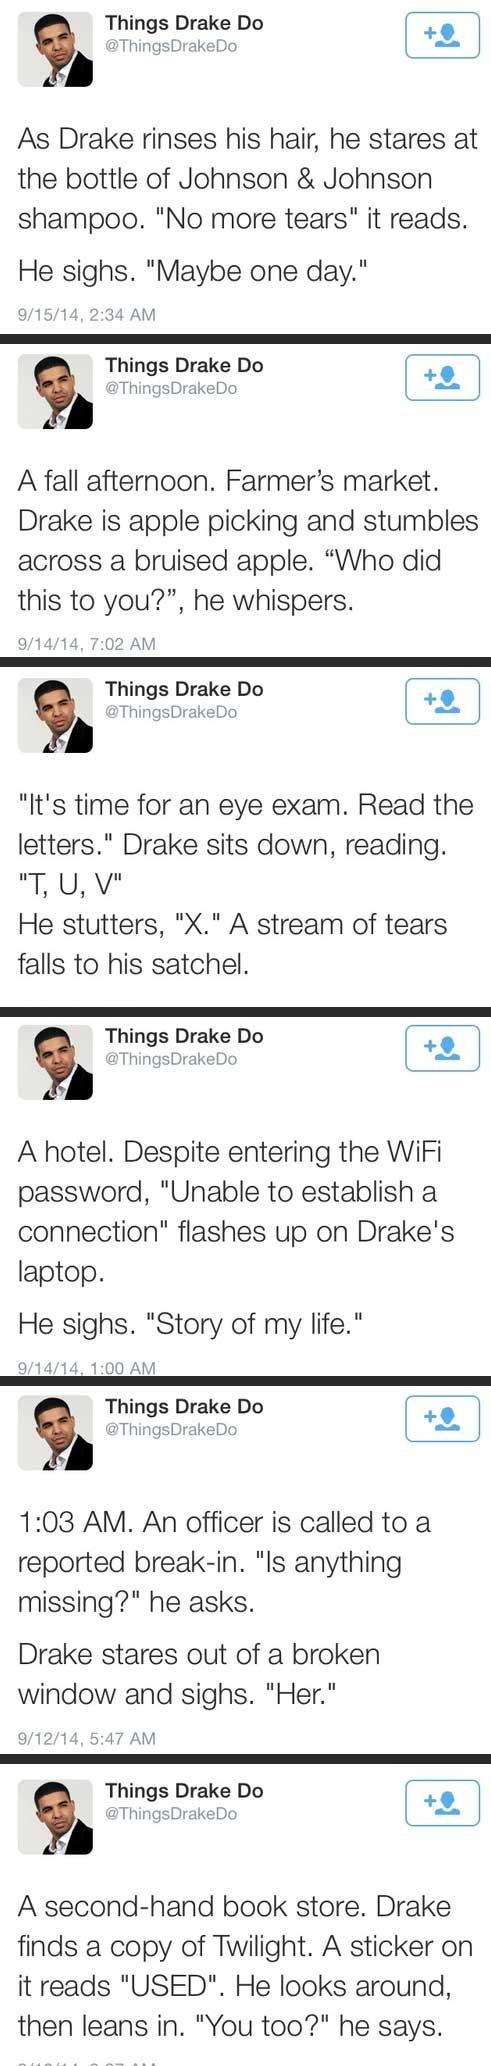 Things Drake Do